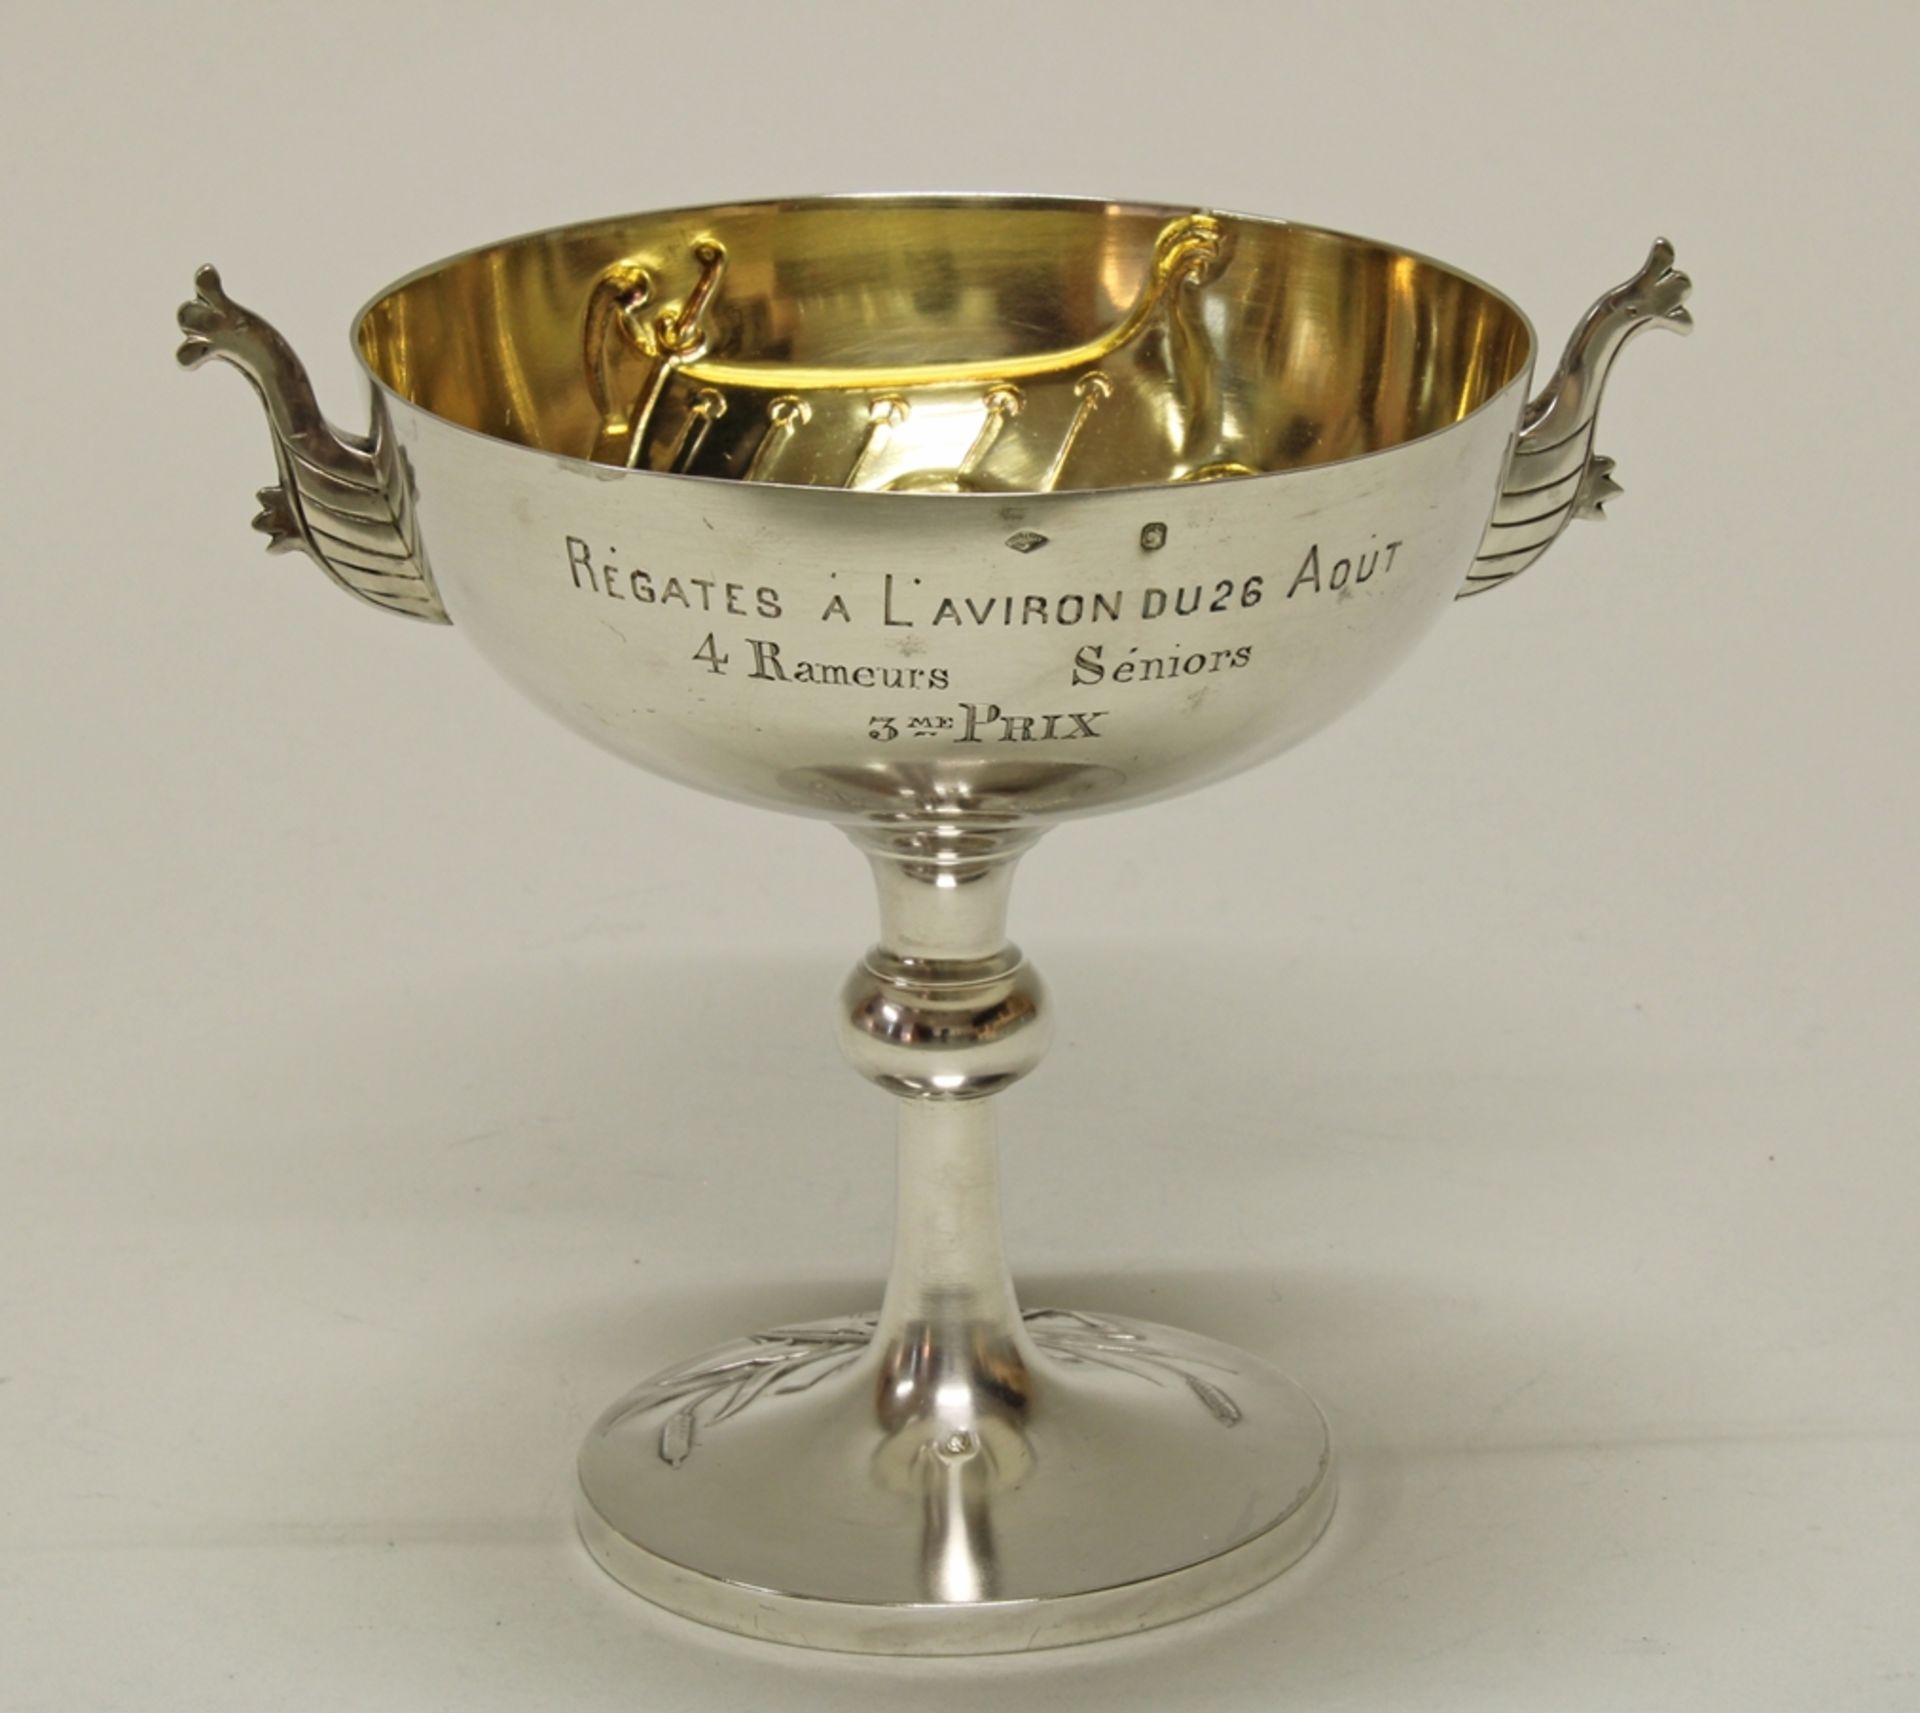 Preispokal, "Régates à L'aviron", Silber 950, Frankreich, um 1900, Charles Boulanger, Kuppa innen v - Bild 2 aus 2